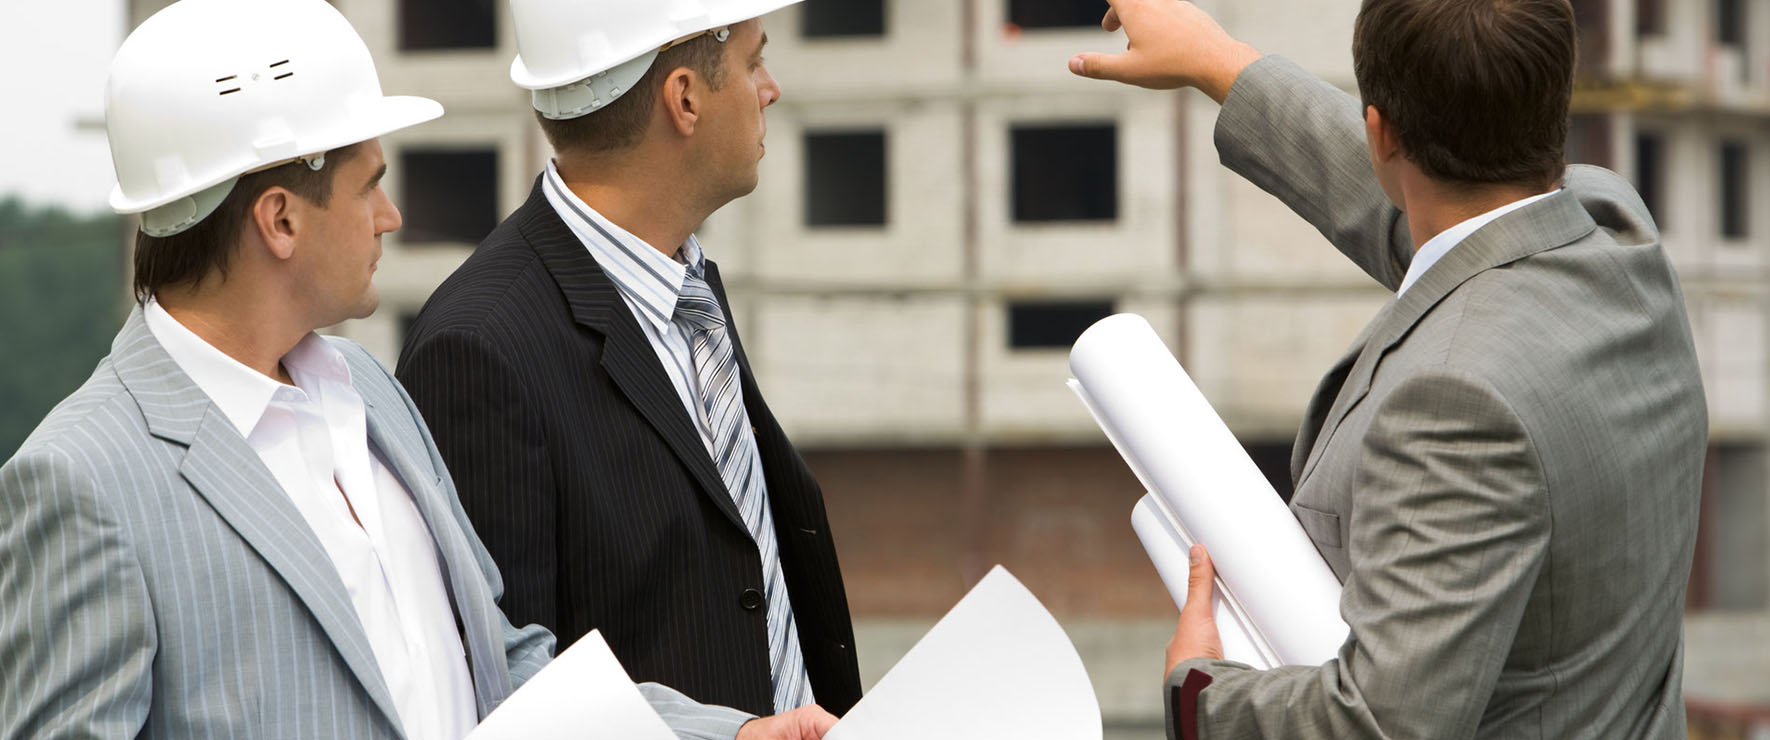 Технический надзор и строительный контроль: на что нужно обратить внимание подрядным организациям при исполнении контрактов?